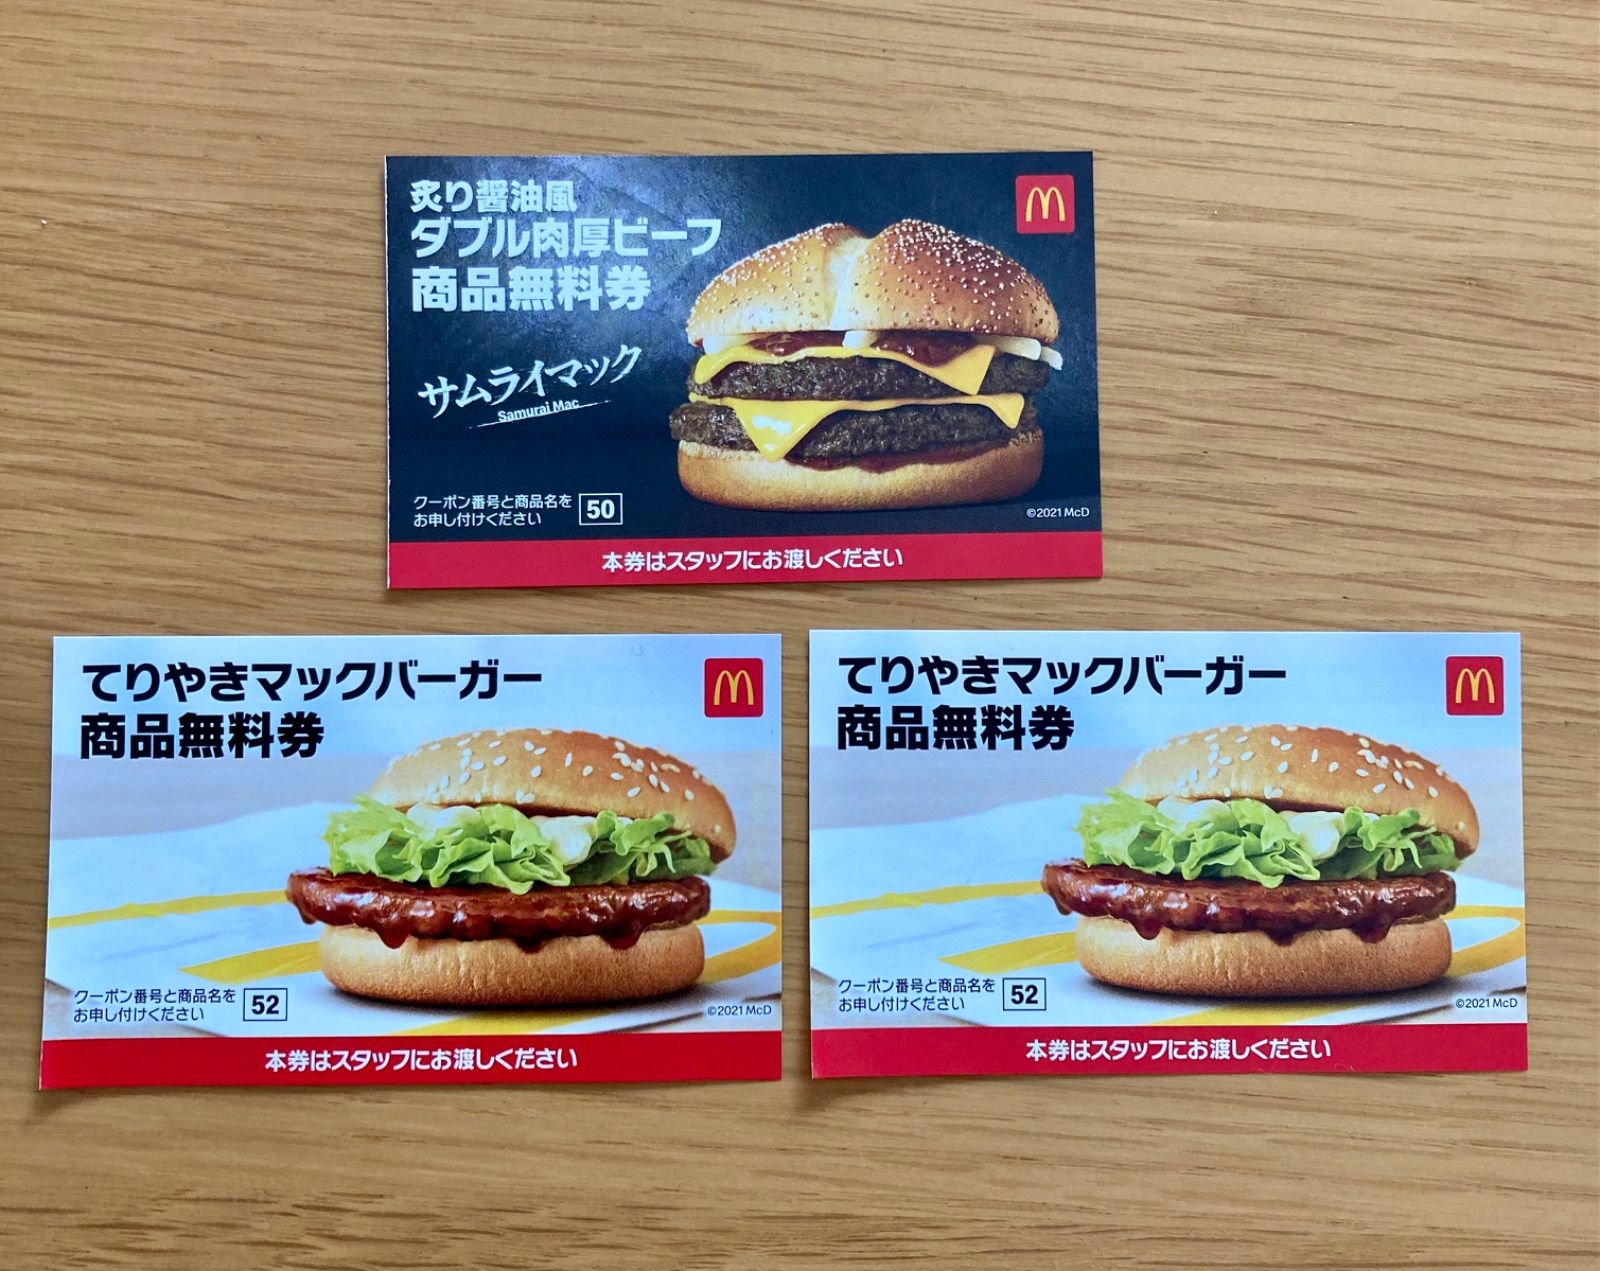 炙り醤油風ダブル肉厚ビーフ 無料券 2枚 McDonald's - フード・ドリンク券